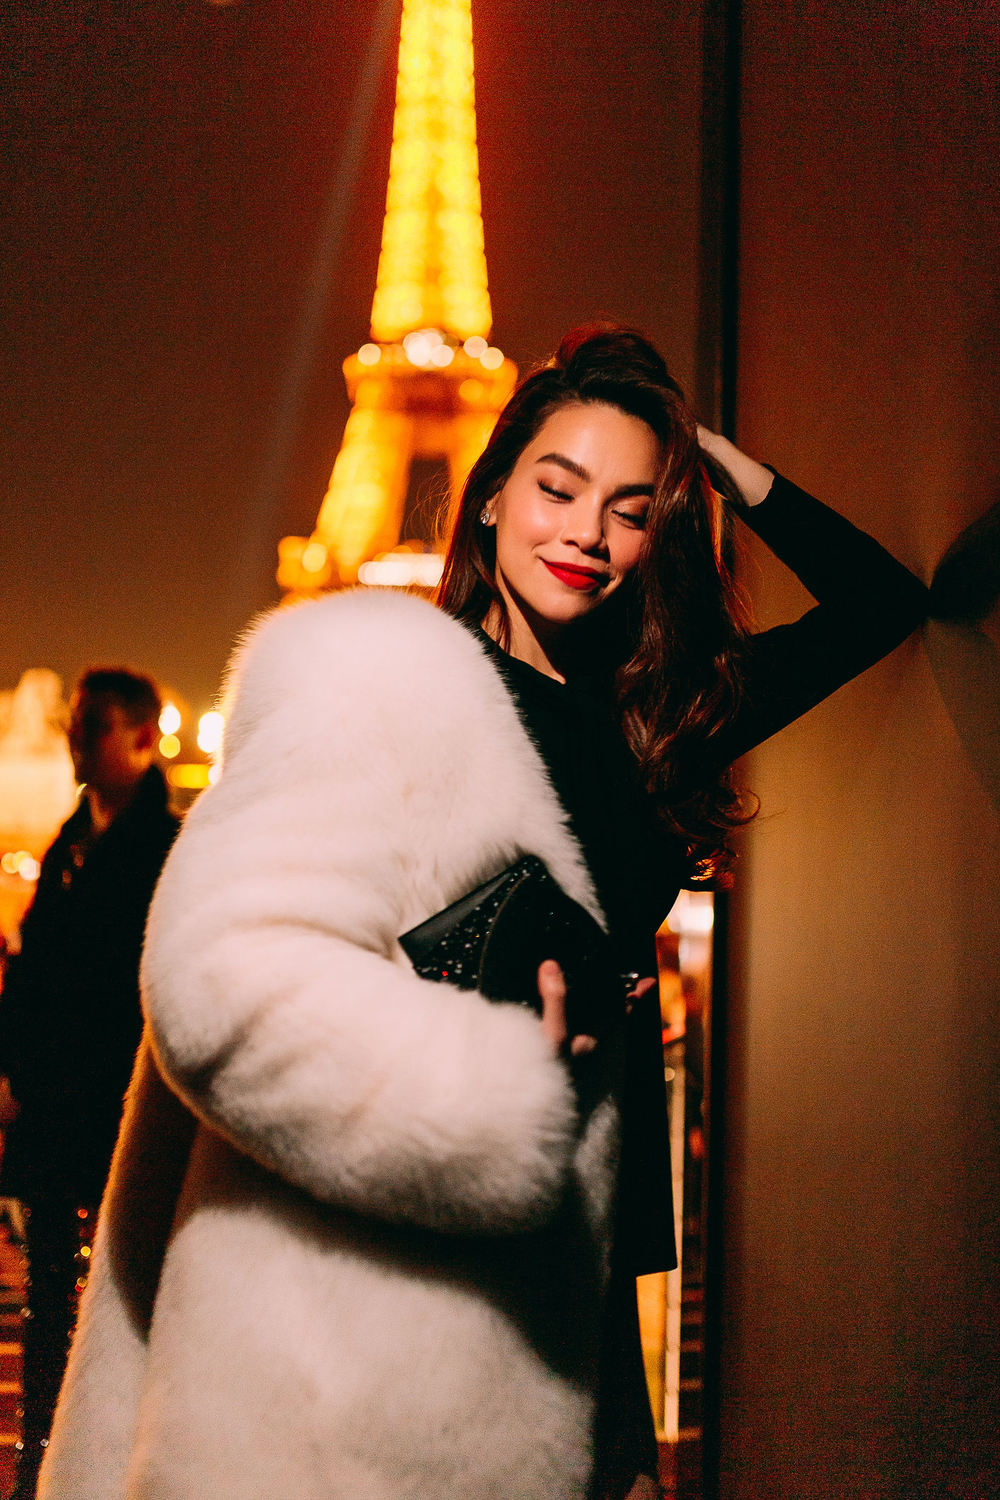 
Xuất hiện ở show Saint Laurent tại Paris Fashion Week, Hồ Ngọc Hà thể hiện đẳng cấp của mình khi chịu chi tới 300 triệu cho chiếc áo khoác lông. Ngoài ra, từ váy, túi xách, giày cao gót cũng được cô nàng lựa chọn kĩ lưỡng từ thương hiệu thời trang nổi tiếng.